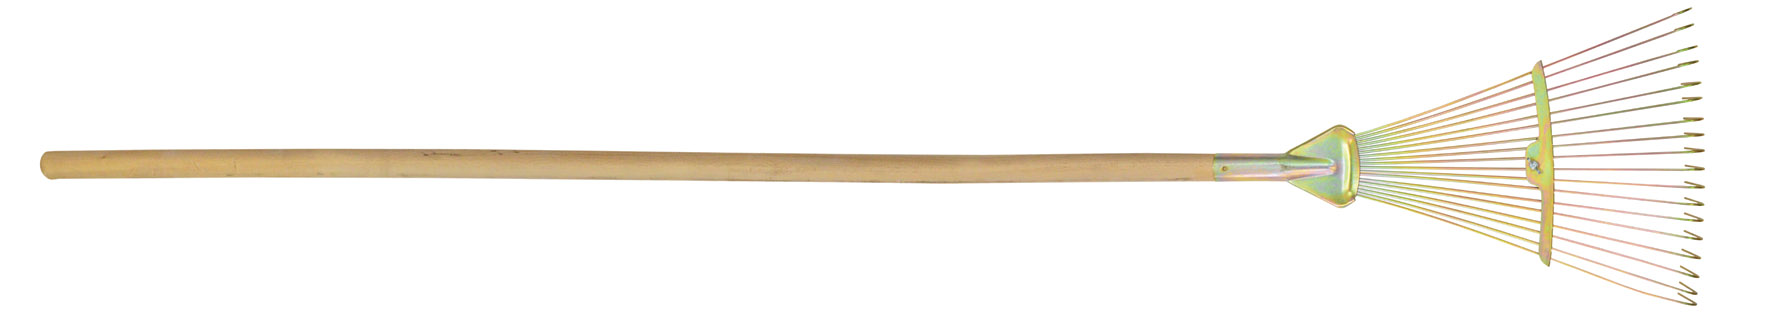 70-789 Грабли веерные проволочные оцинк., Раздвижные 18 зубов, 200-460 мм, с ручкой (Украина)